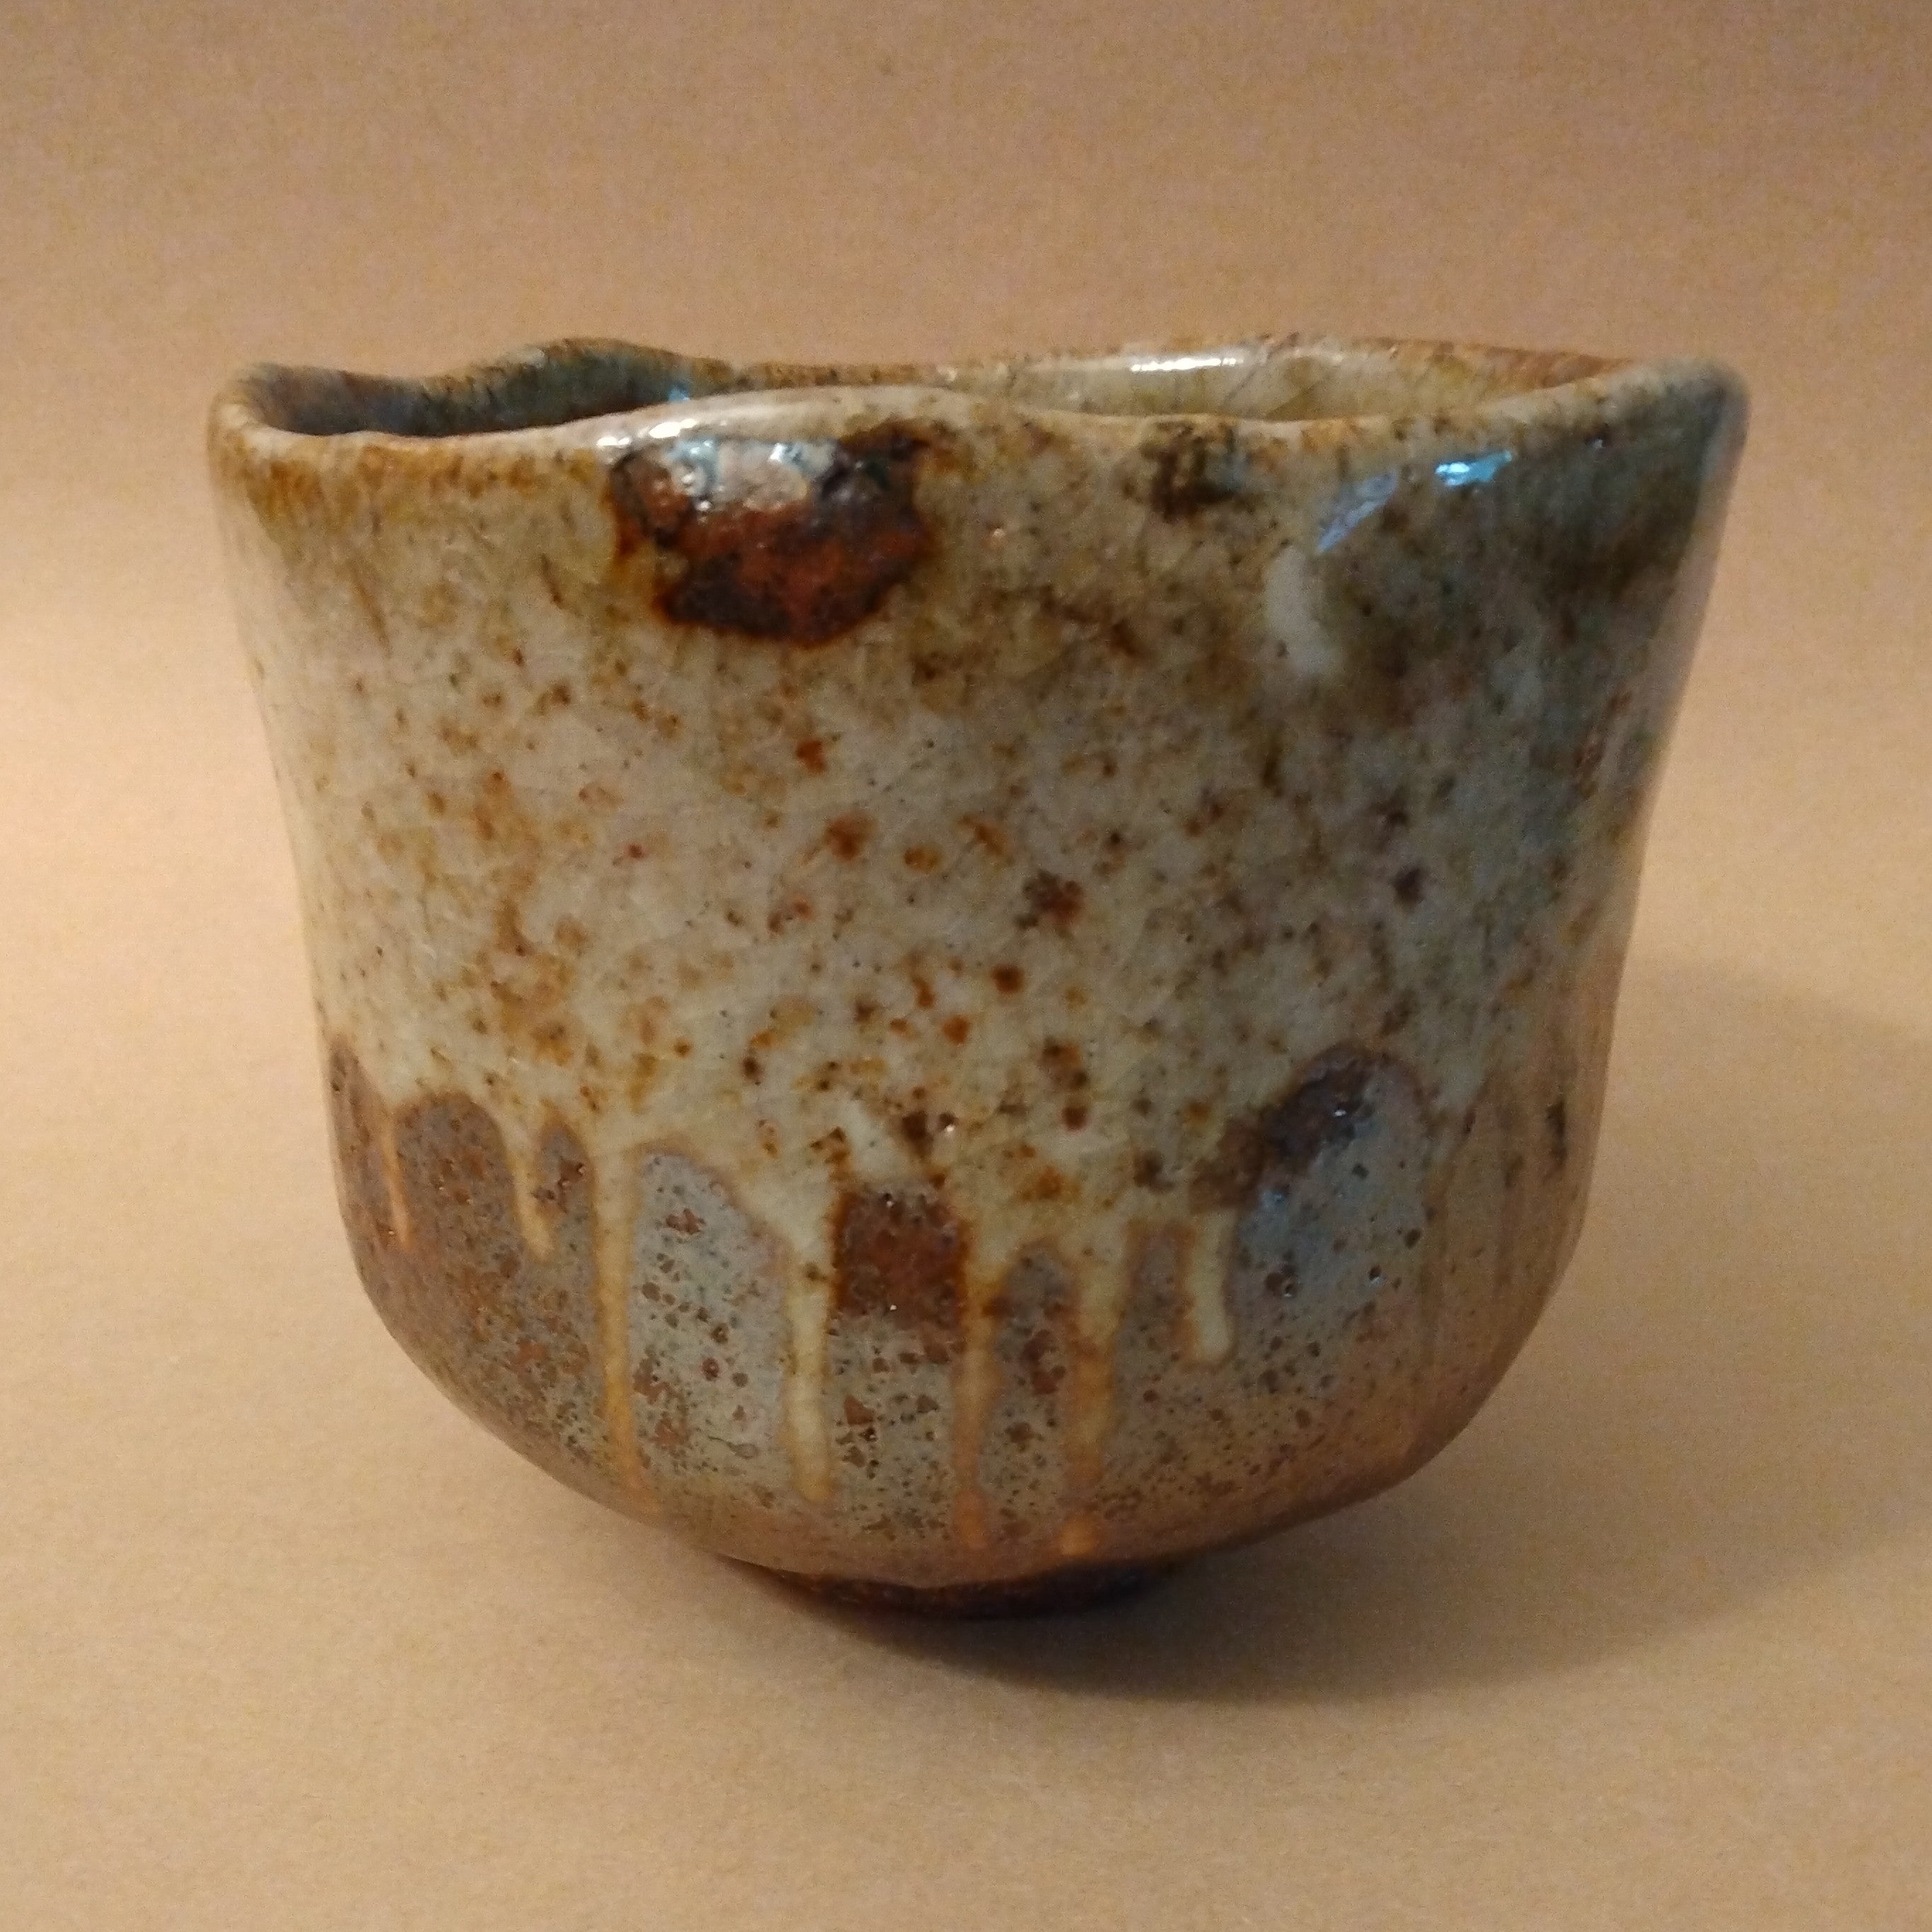 Tsutsu-gata (Cylinder-shaped) Tea Bowl, Matcha Chawan, by George Gledhill